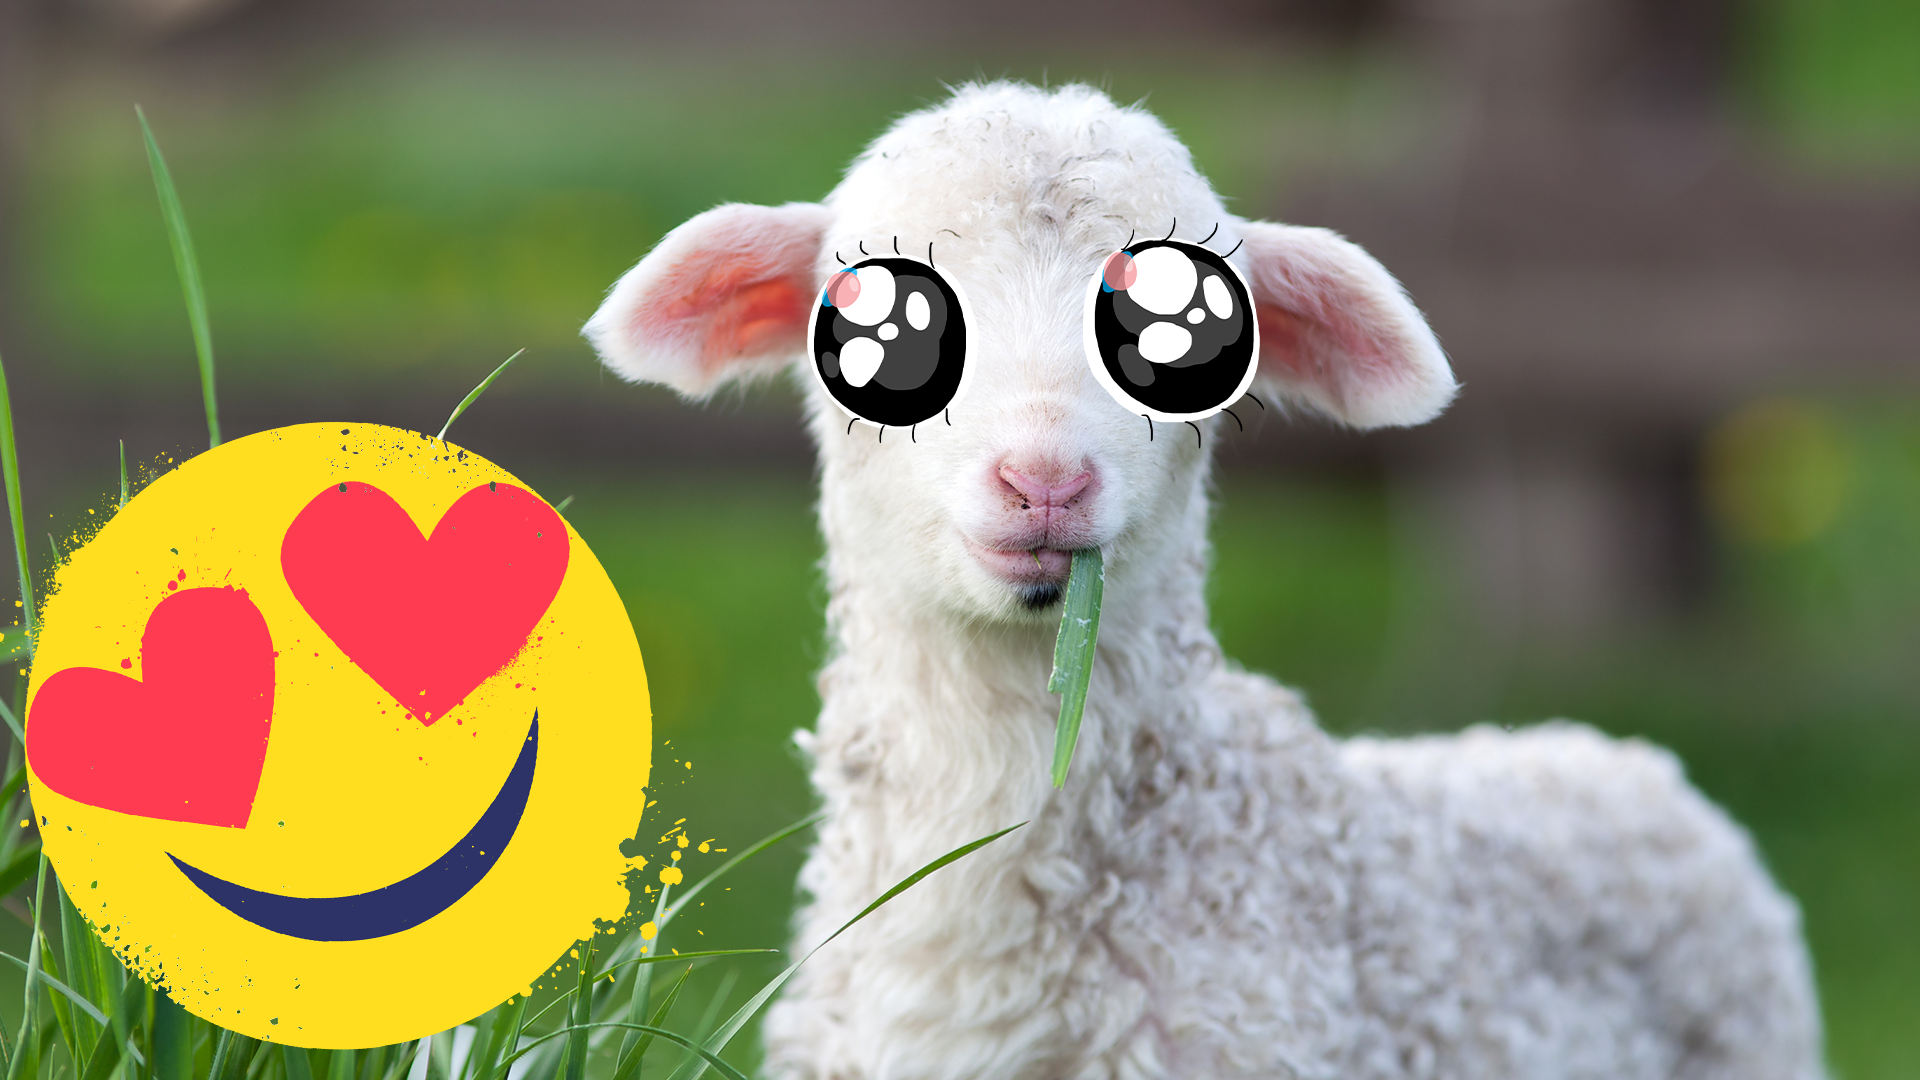 Baby lamb and Beano emoji